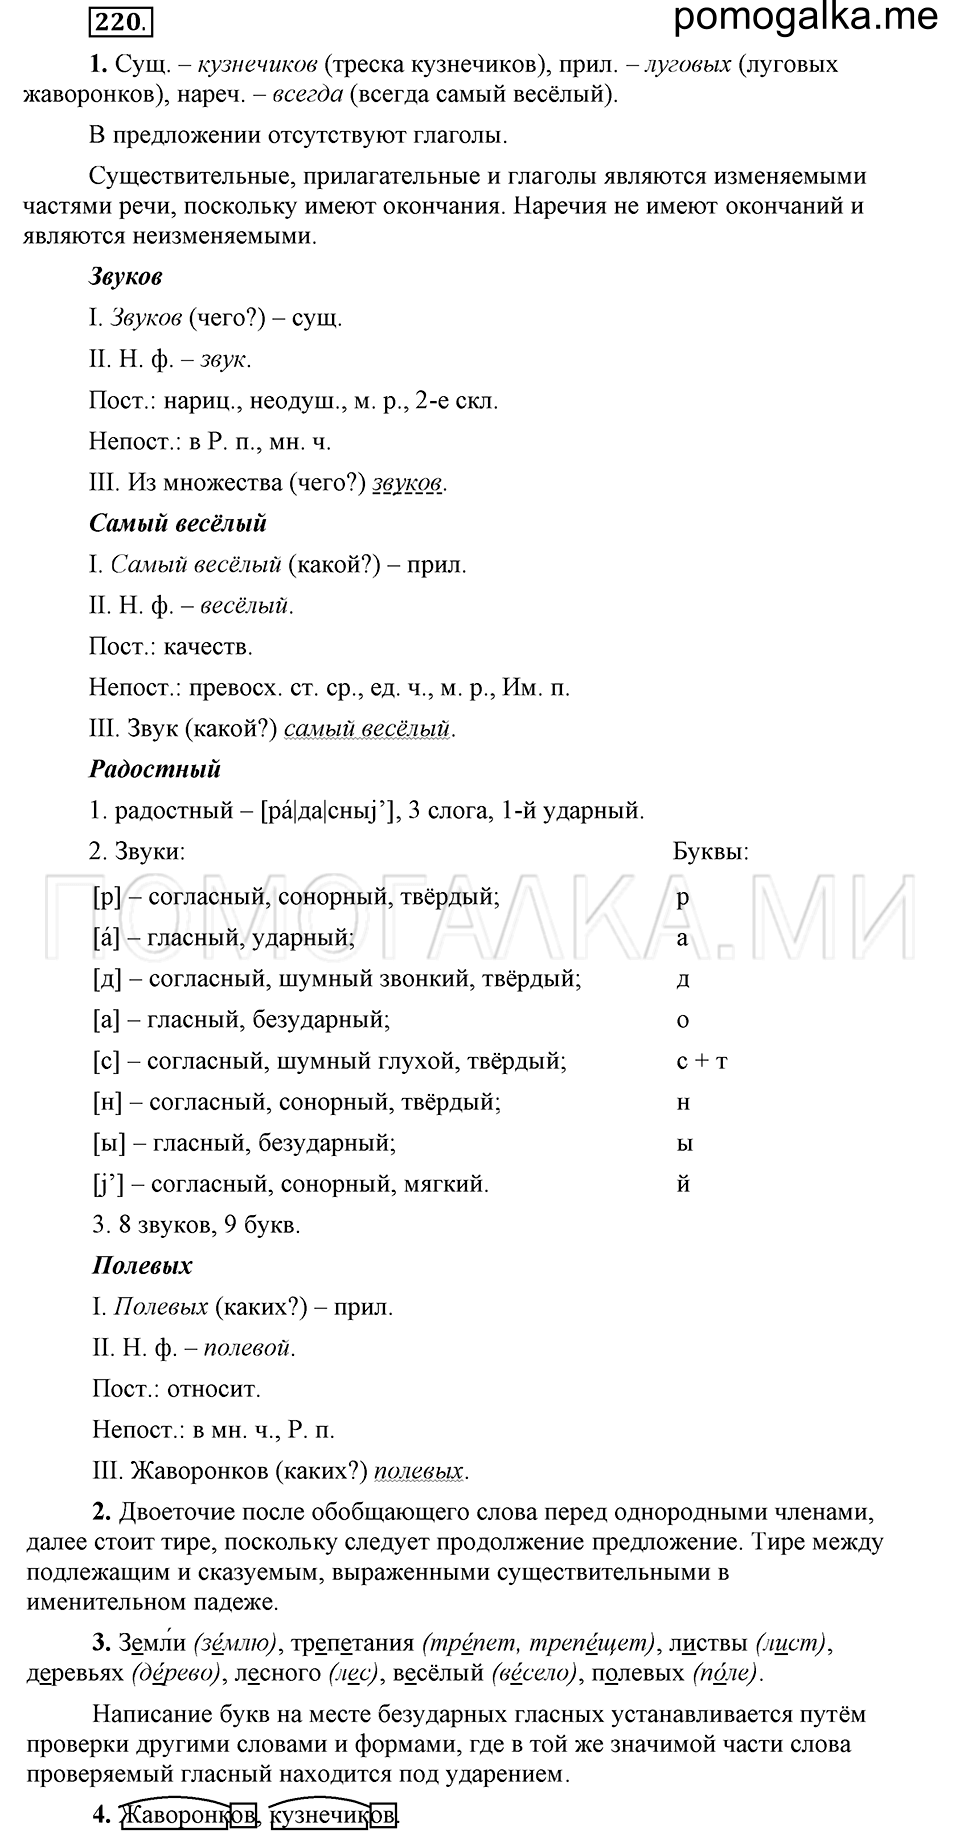 упражнение 220 русский язык 6 класс Быстрова, Кибирева 1 часть 2019 год